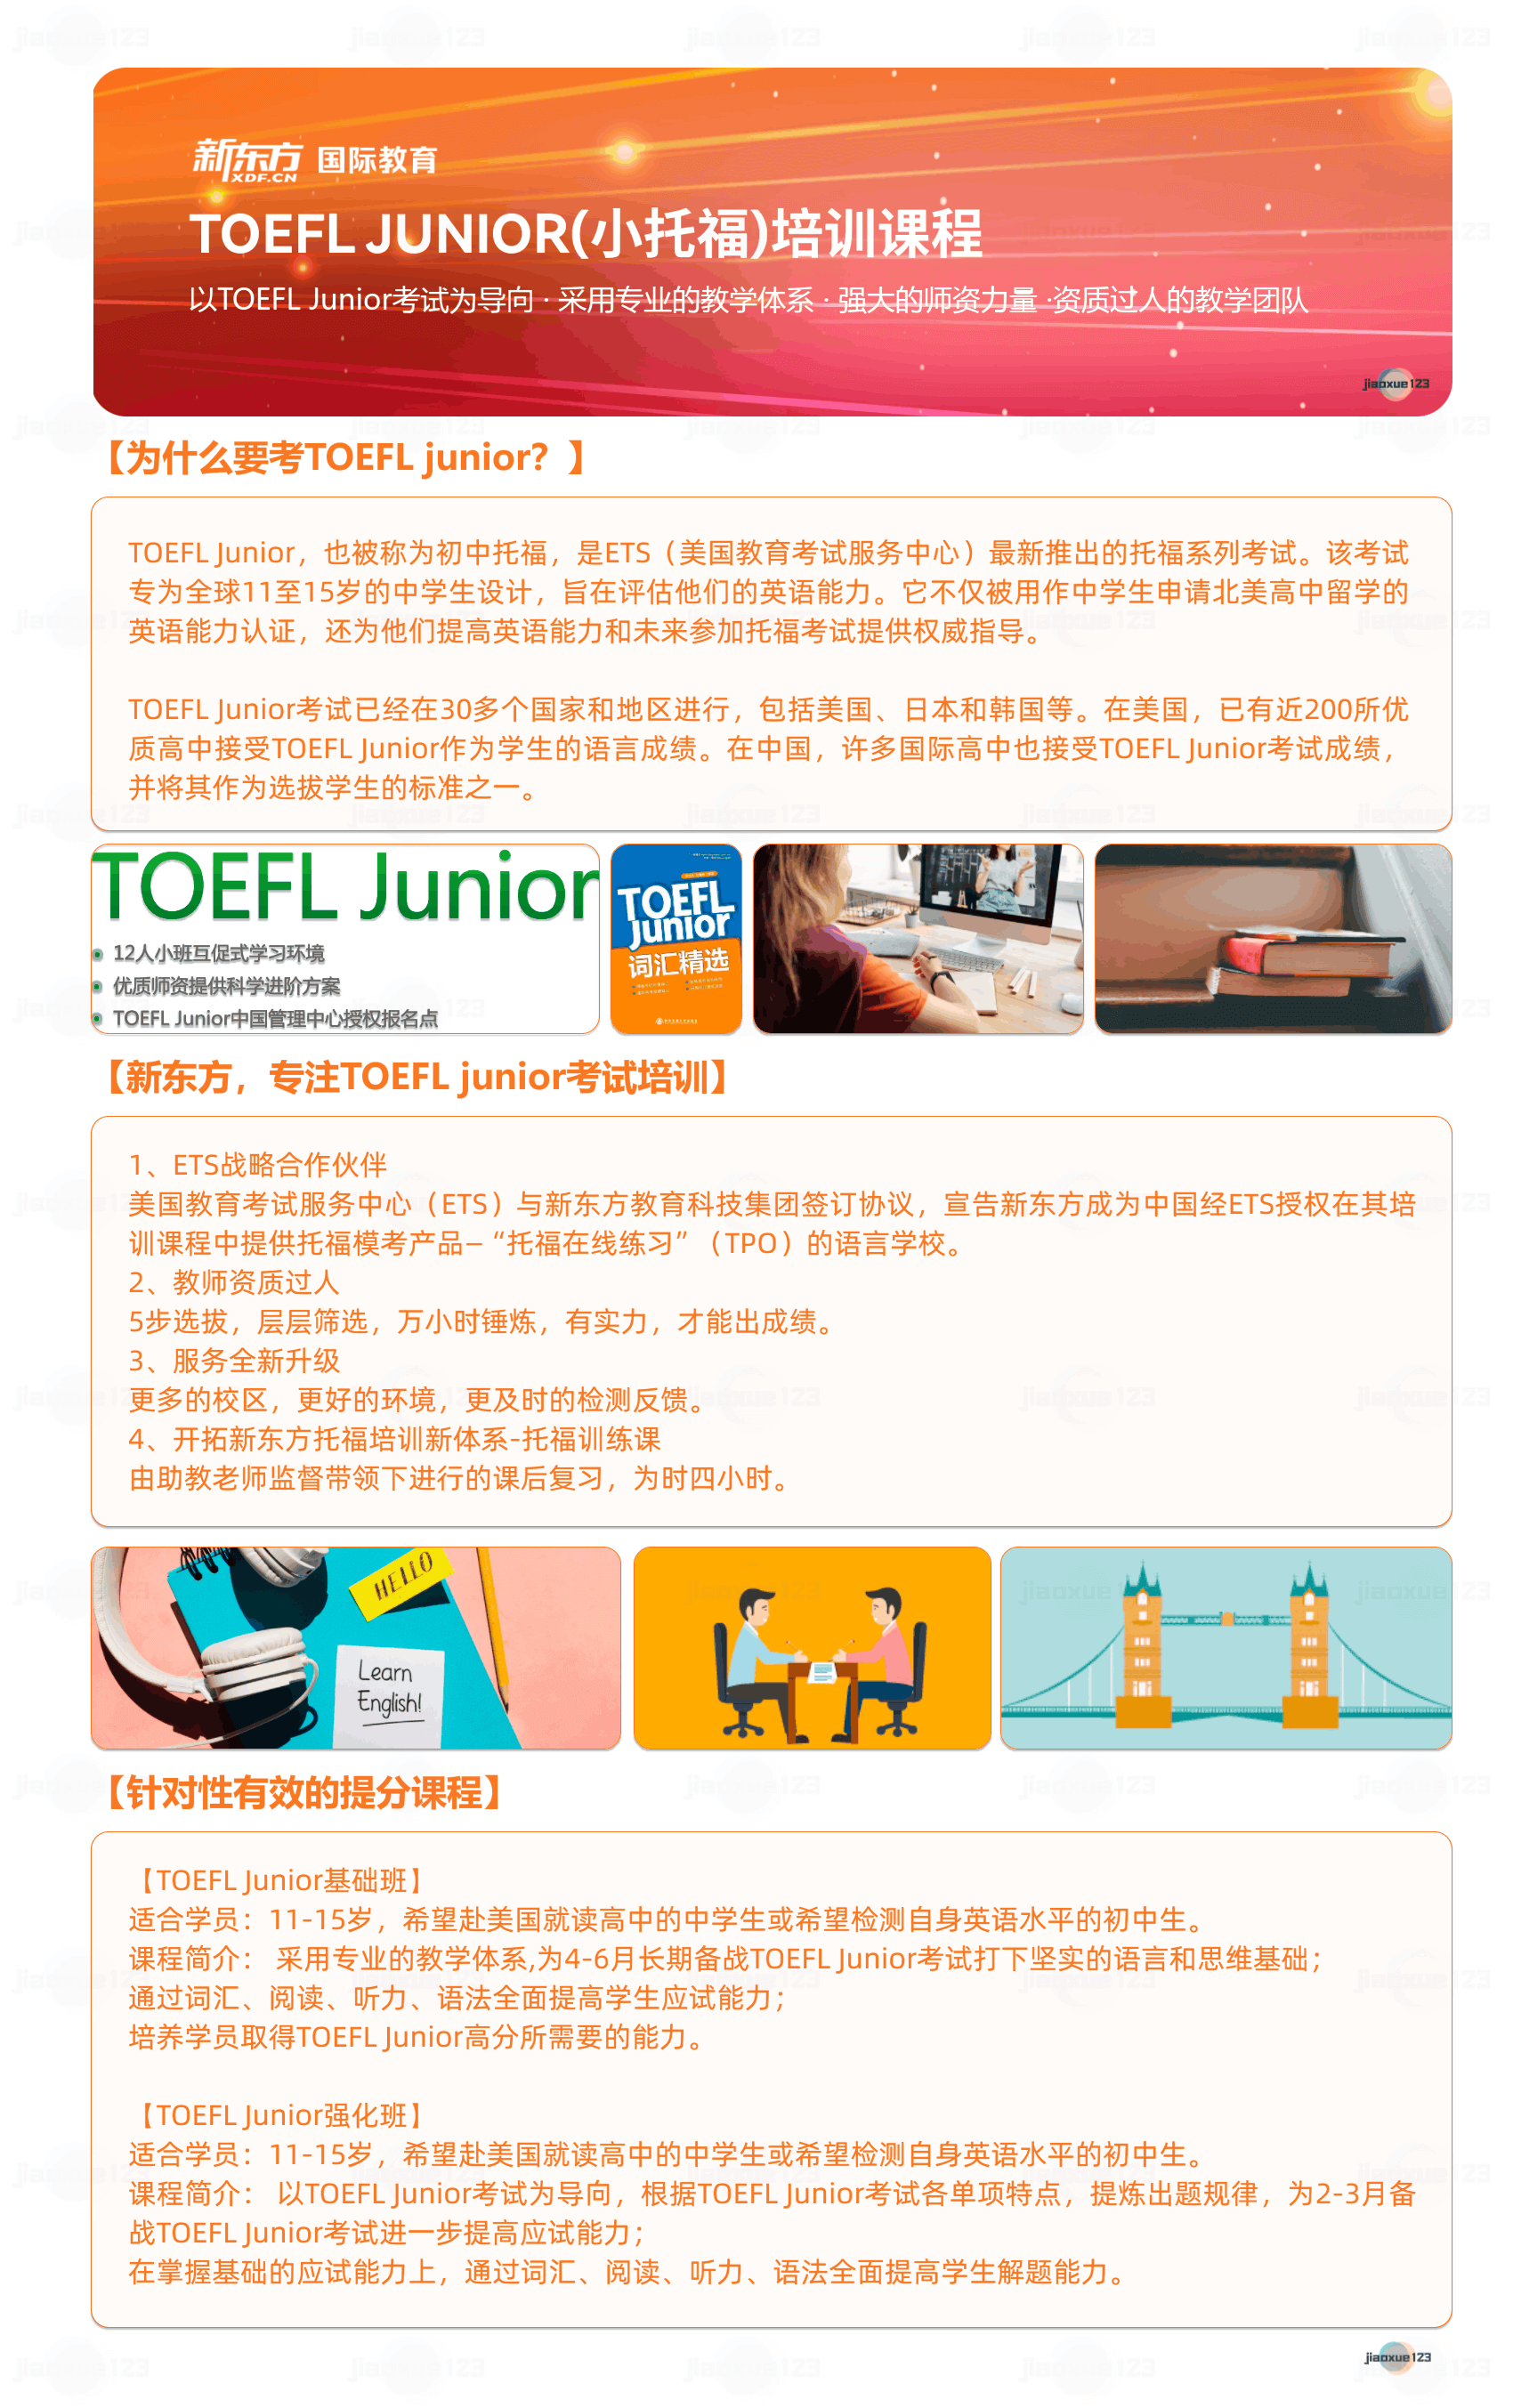 新东方-天津TOEFL JUNIOR(小托福)培训课程详情